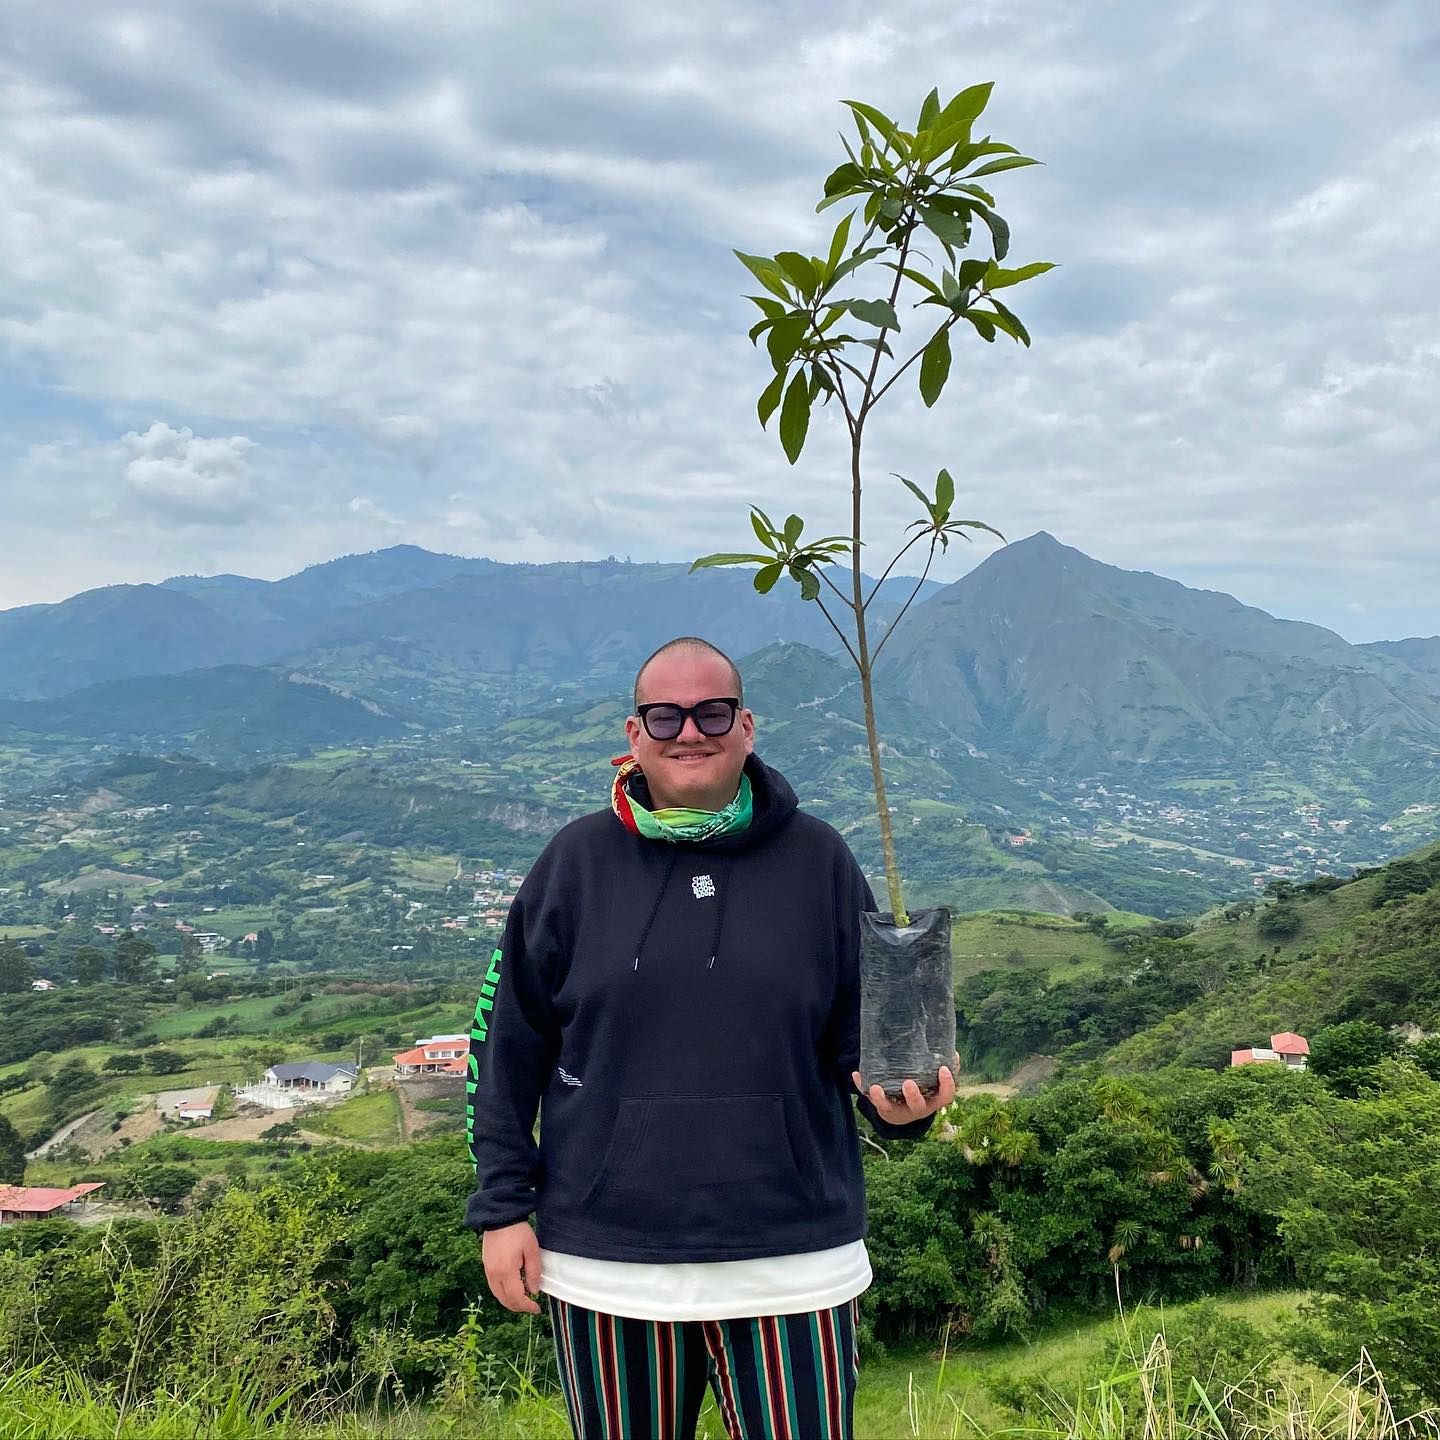 Un homme se tient debout devant la jungle, un petit arbre à la main